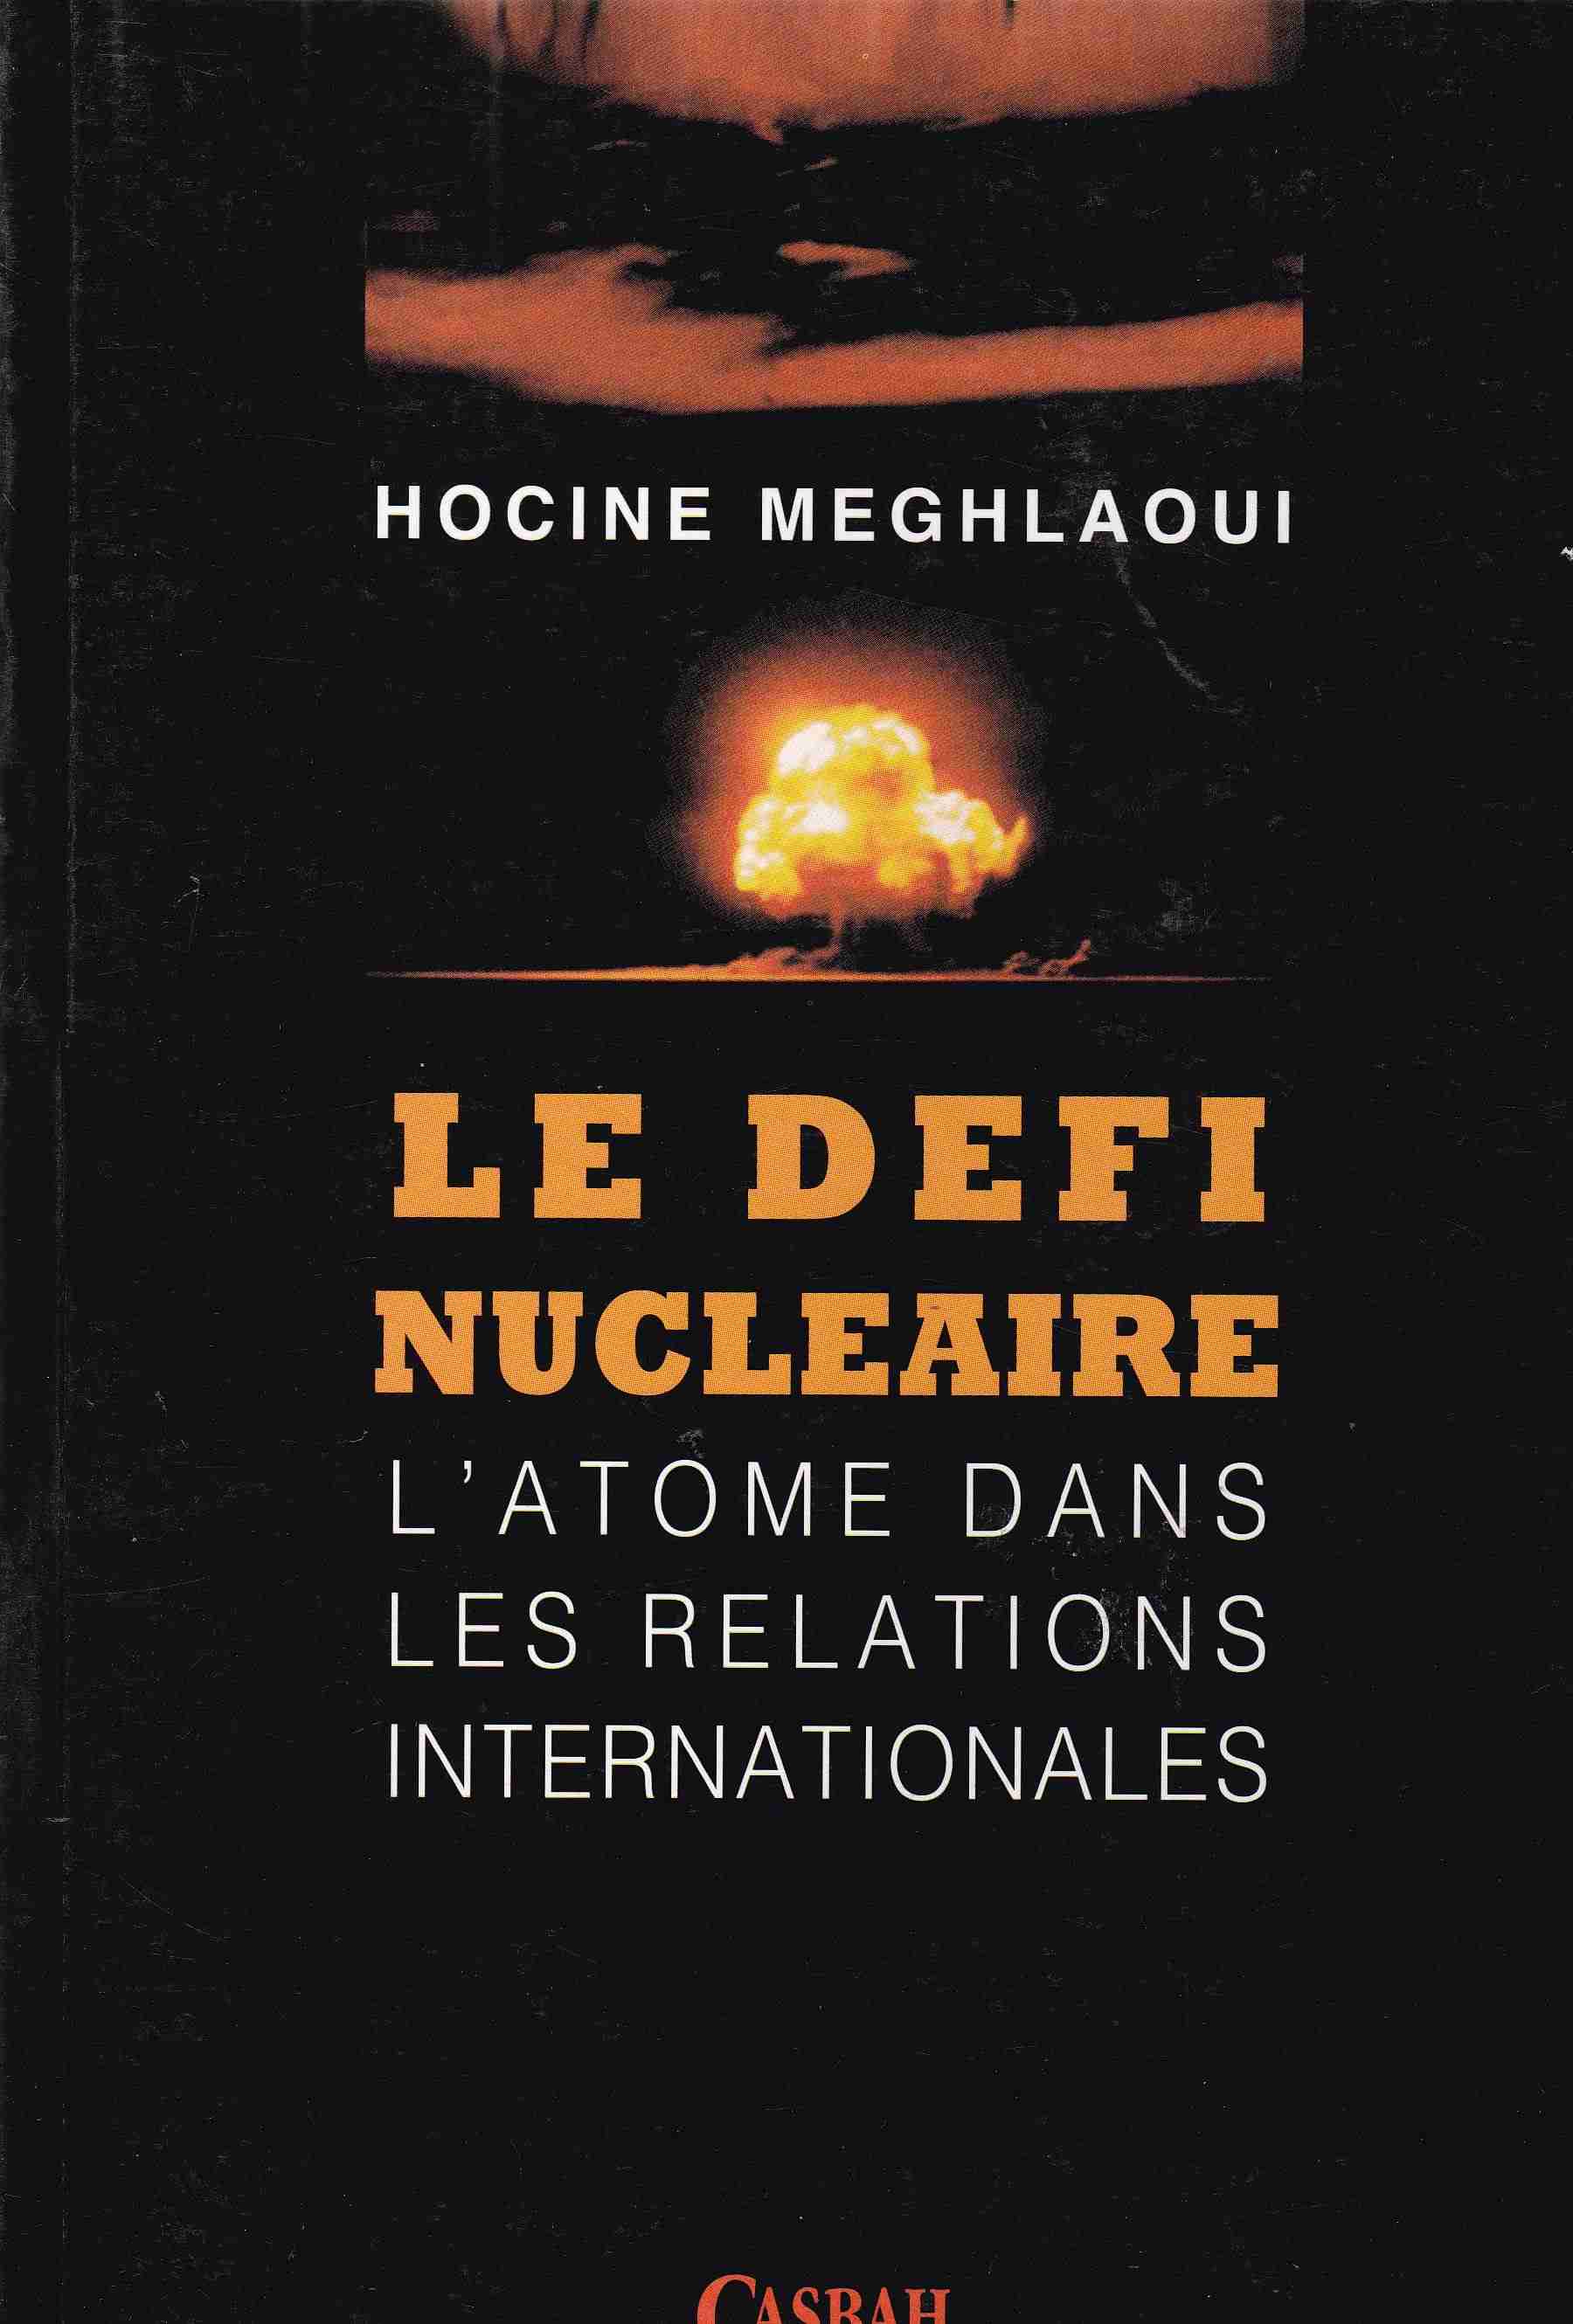 le defi nucleaire l'atome dans les relations internationales